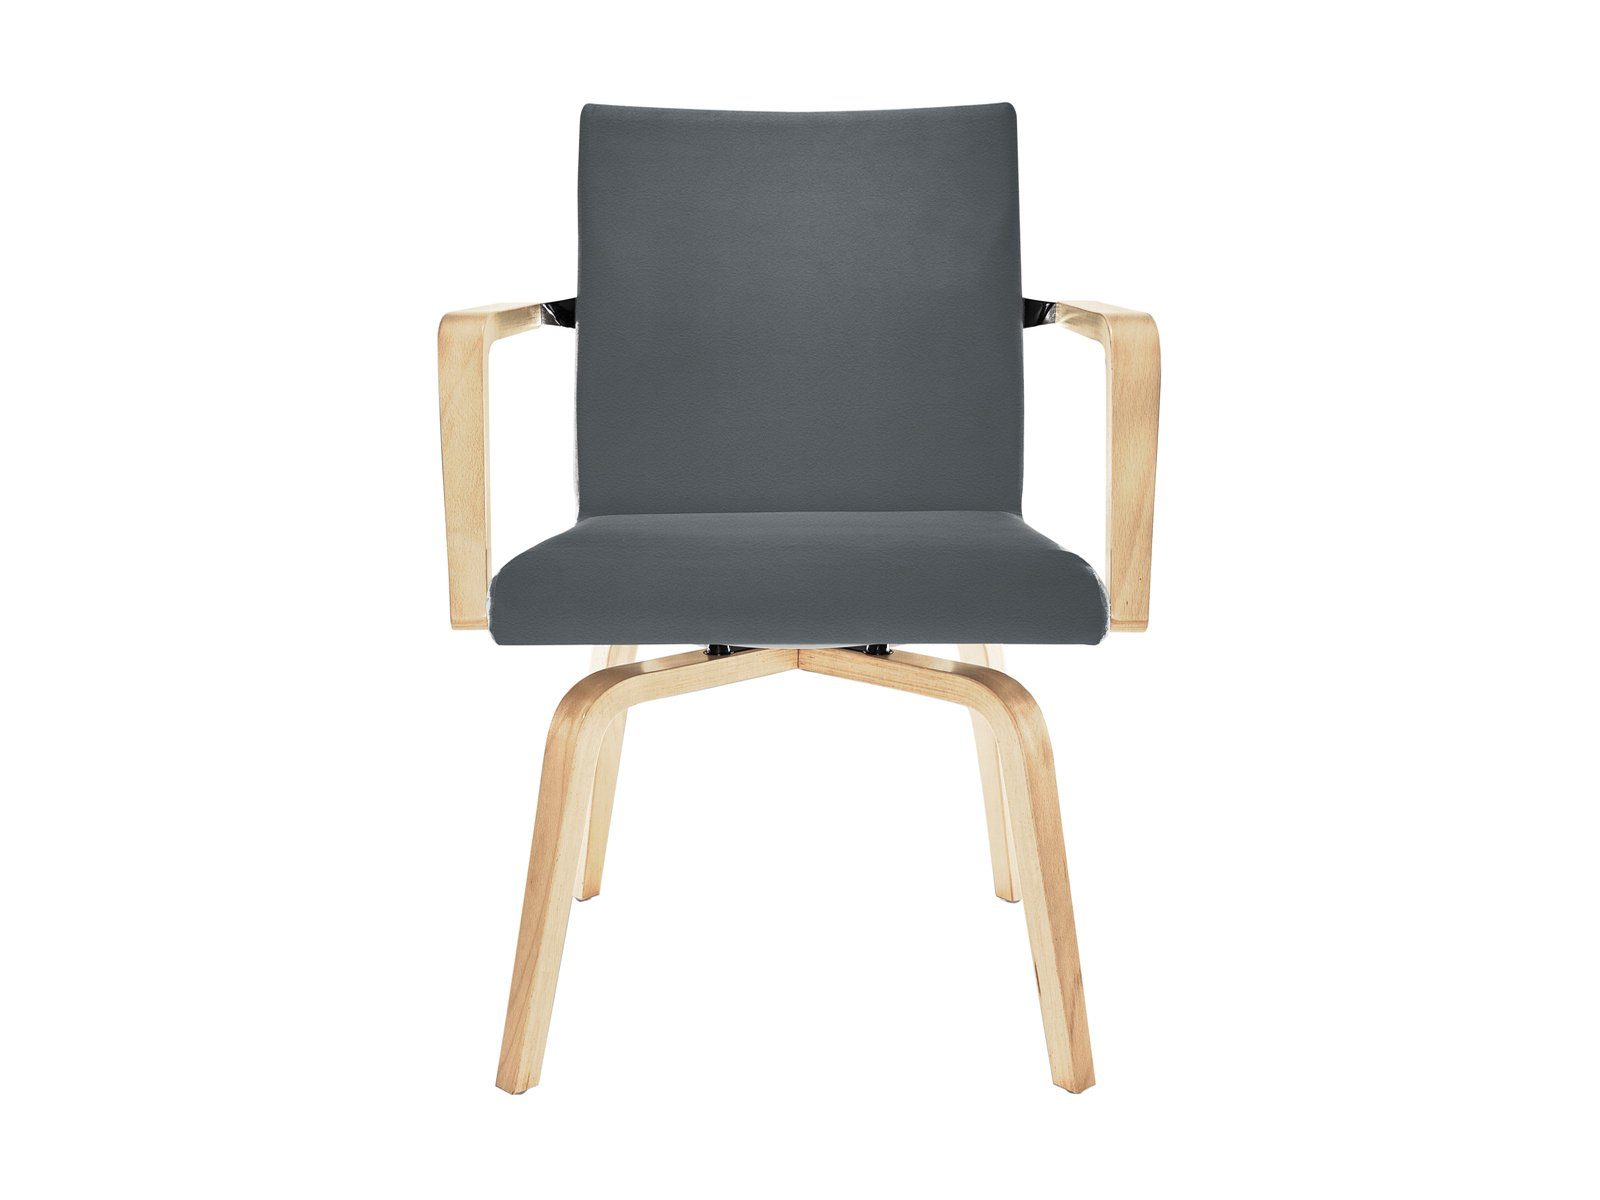 Mauser Sitzkultur Armlehnstuhl, ergonomischer Senioren-stuhl mit Armlehnen, Besucherstuhl Bezug Braun Grau